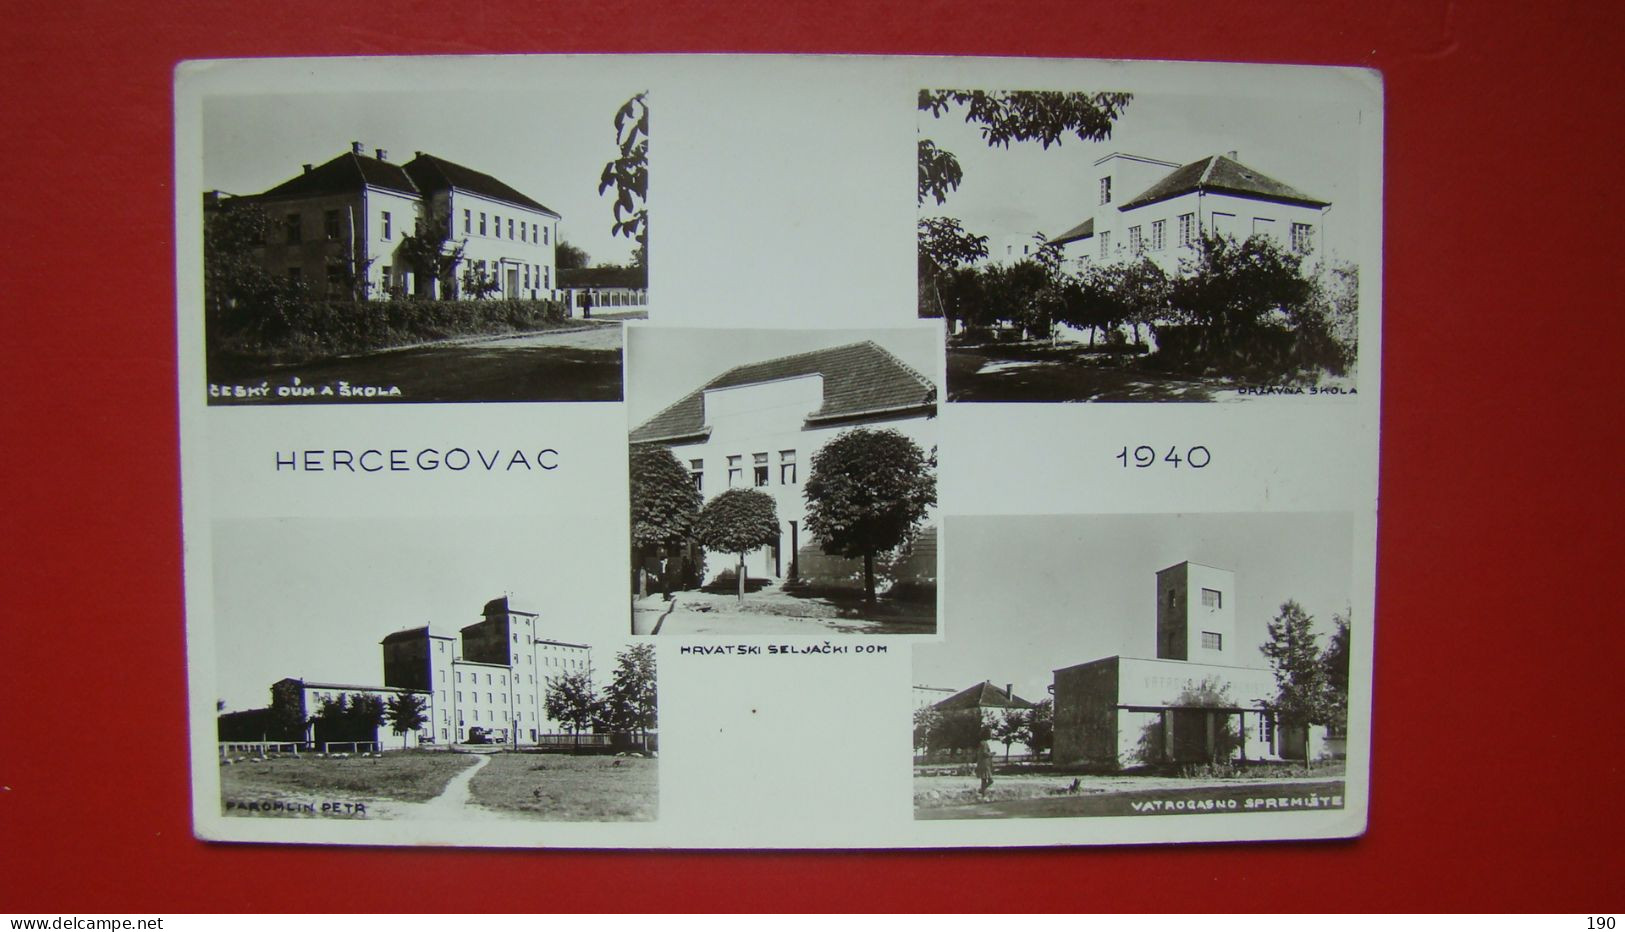 Hercegovac(1940). Cesky Dum A Skola,Hrvatski Seljacki Dom,Vatrogasno Spremiste. - Croatia